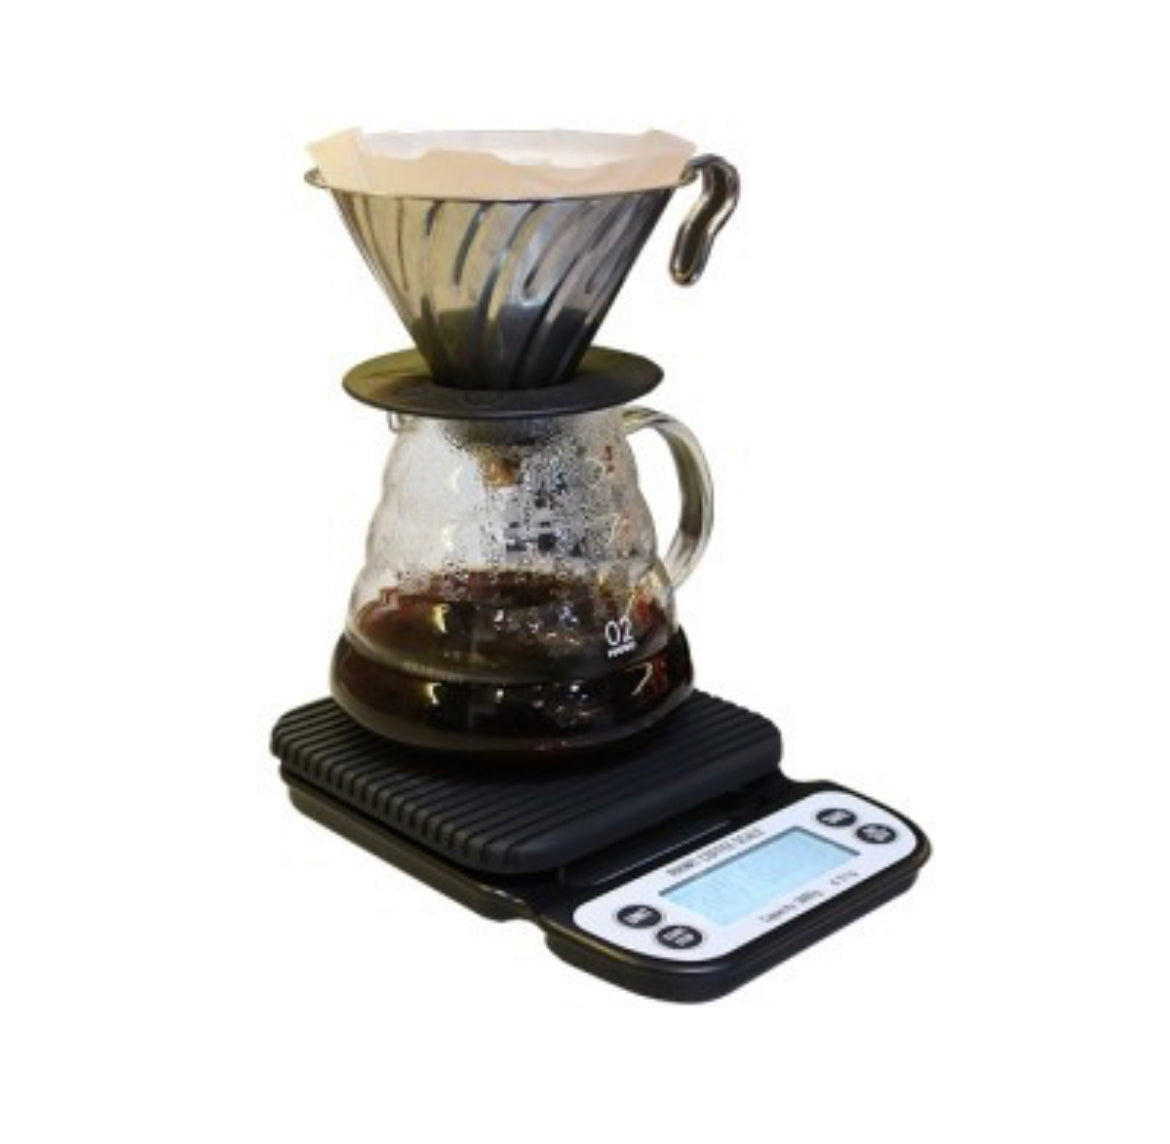 Rhino Coffee Brewing Scale - Coffee Coaching Club